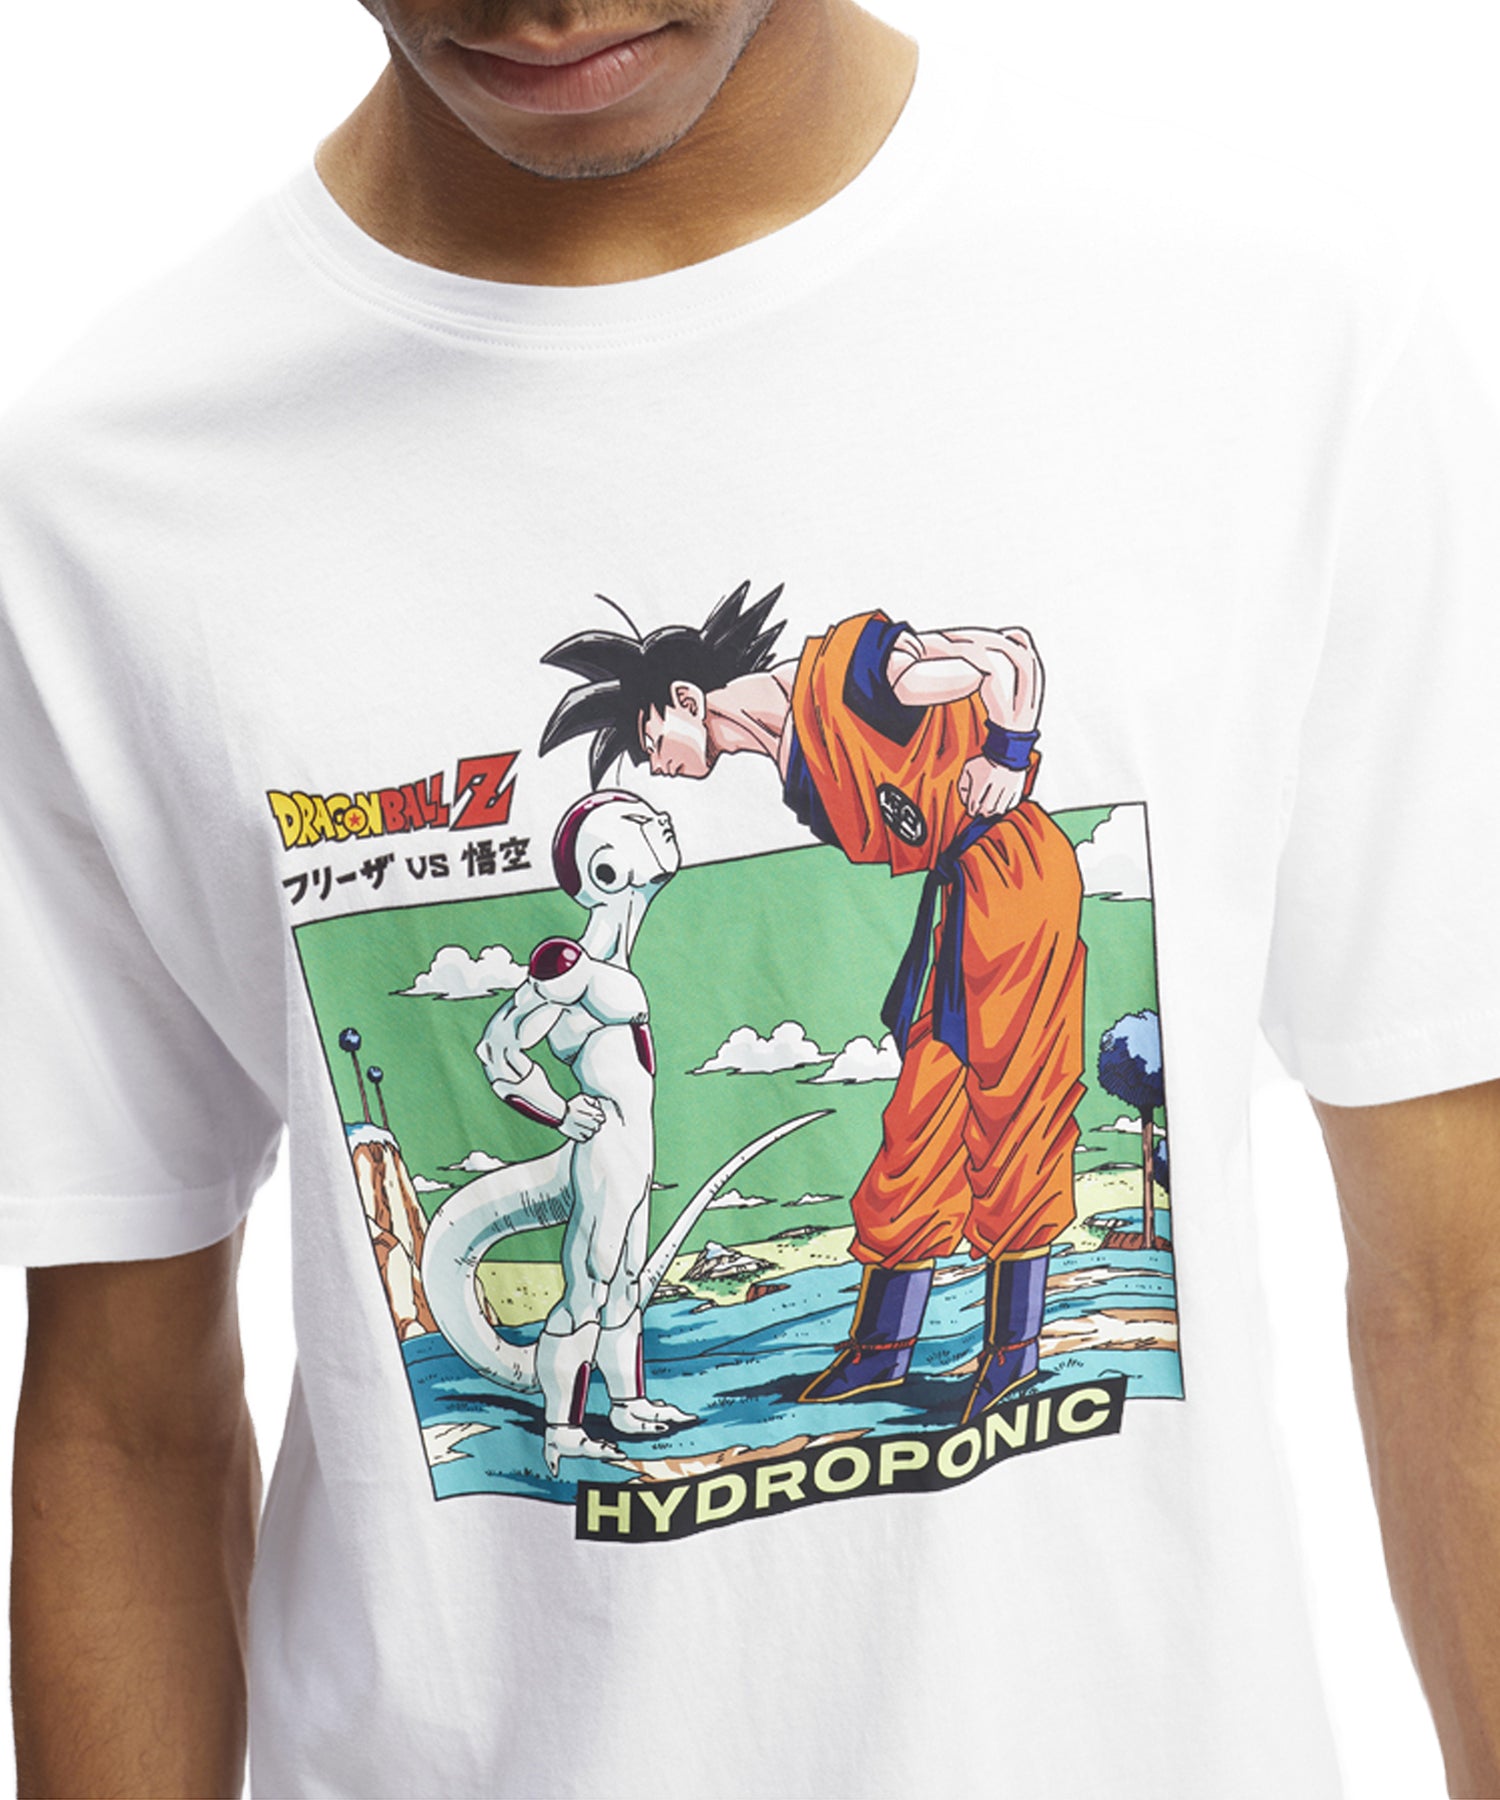 hydroponic-camiseta--dragon-ball-z-frieza-vs-goku-color-blanco-serigrafía-dragon-ball-en-el-pecho.